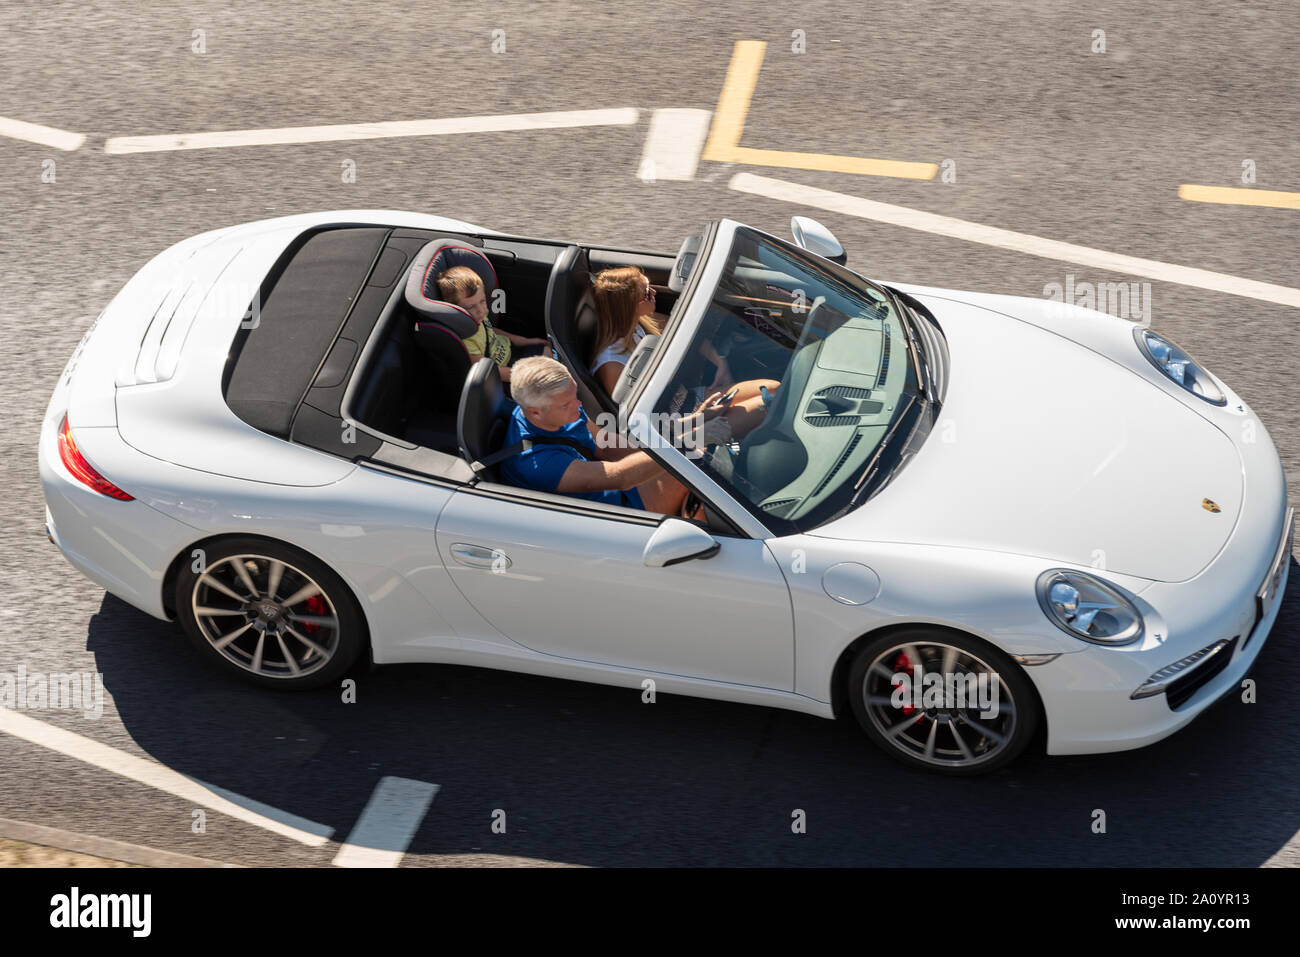 Porsche offene Sportwagen mit Kind hinten im Kindersitz auf Western Esplanade, Southend On Sea, Essex, Großbritannien. Roadster Fahrzeug mit begrenztem Raum Stockfoto